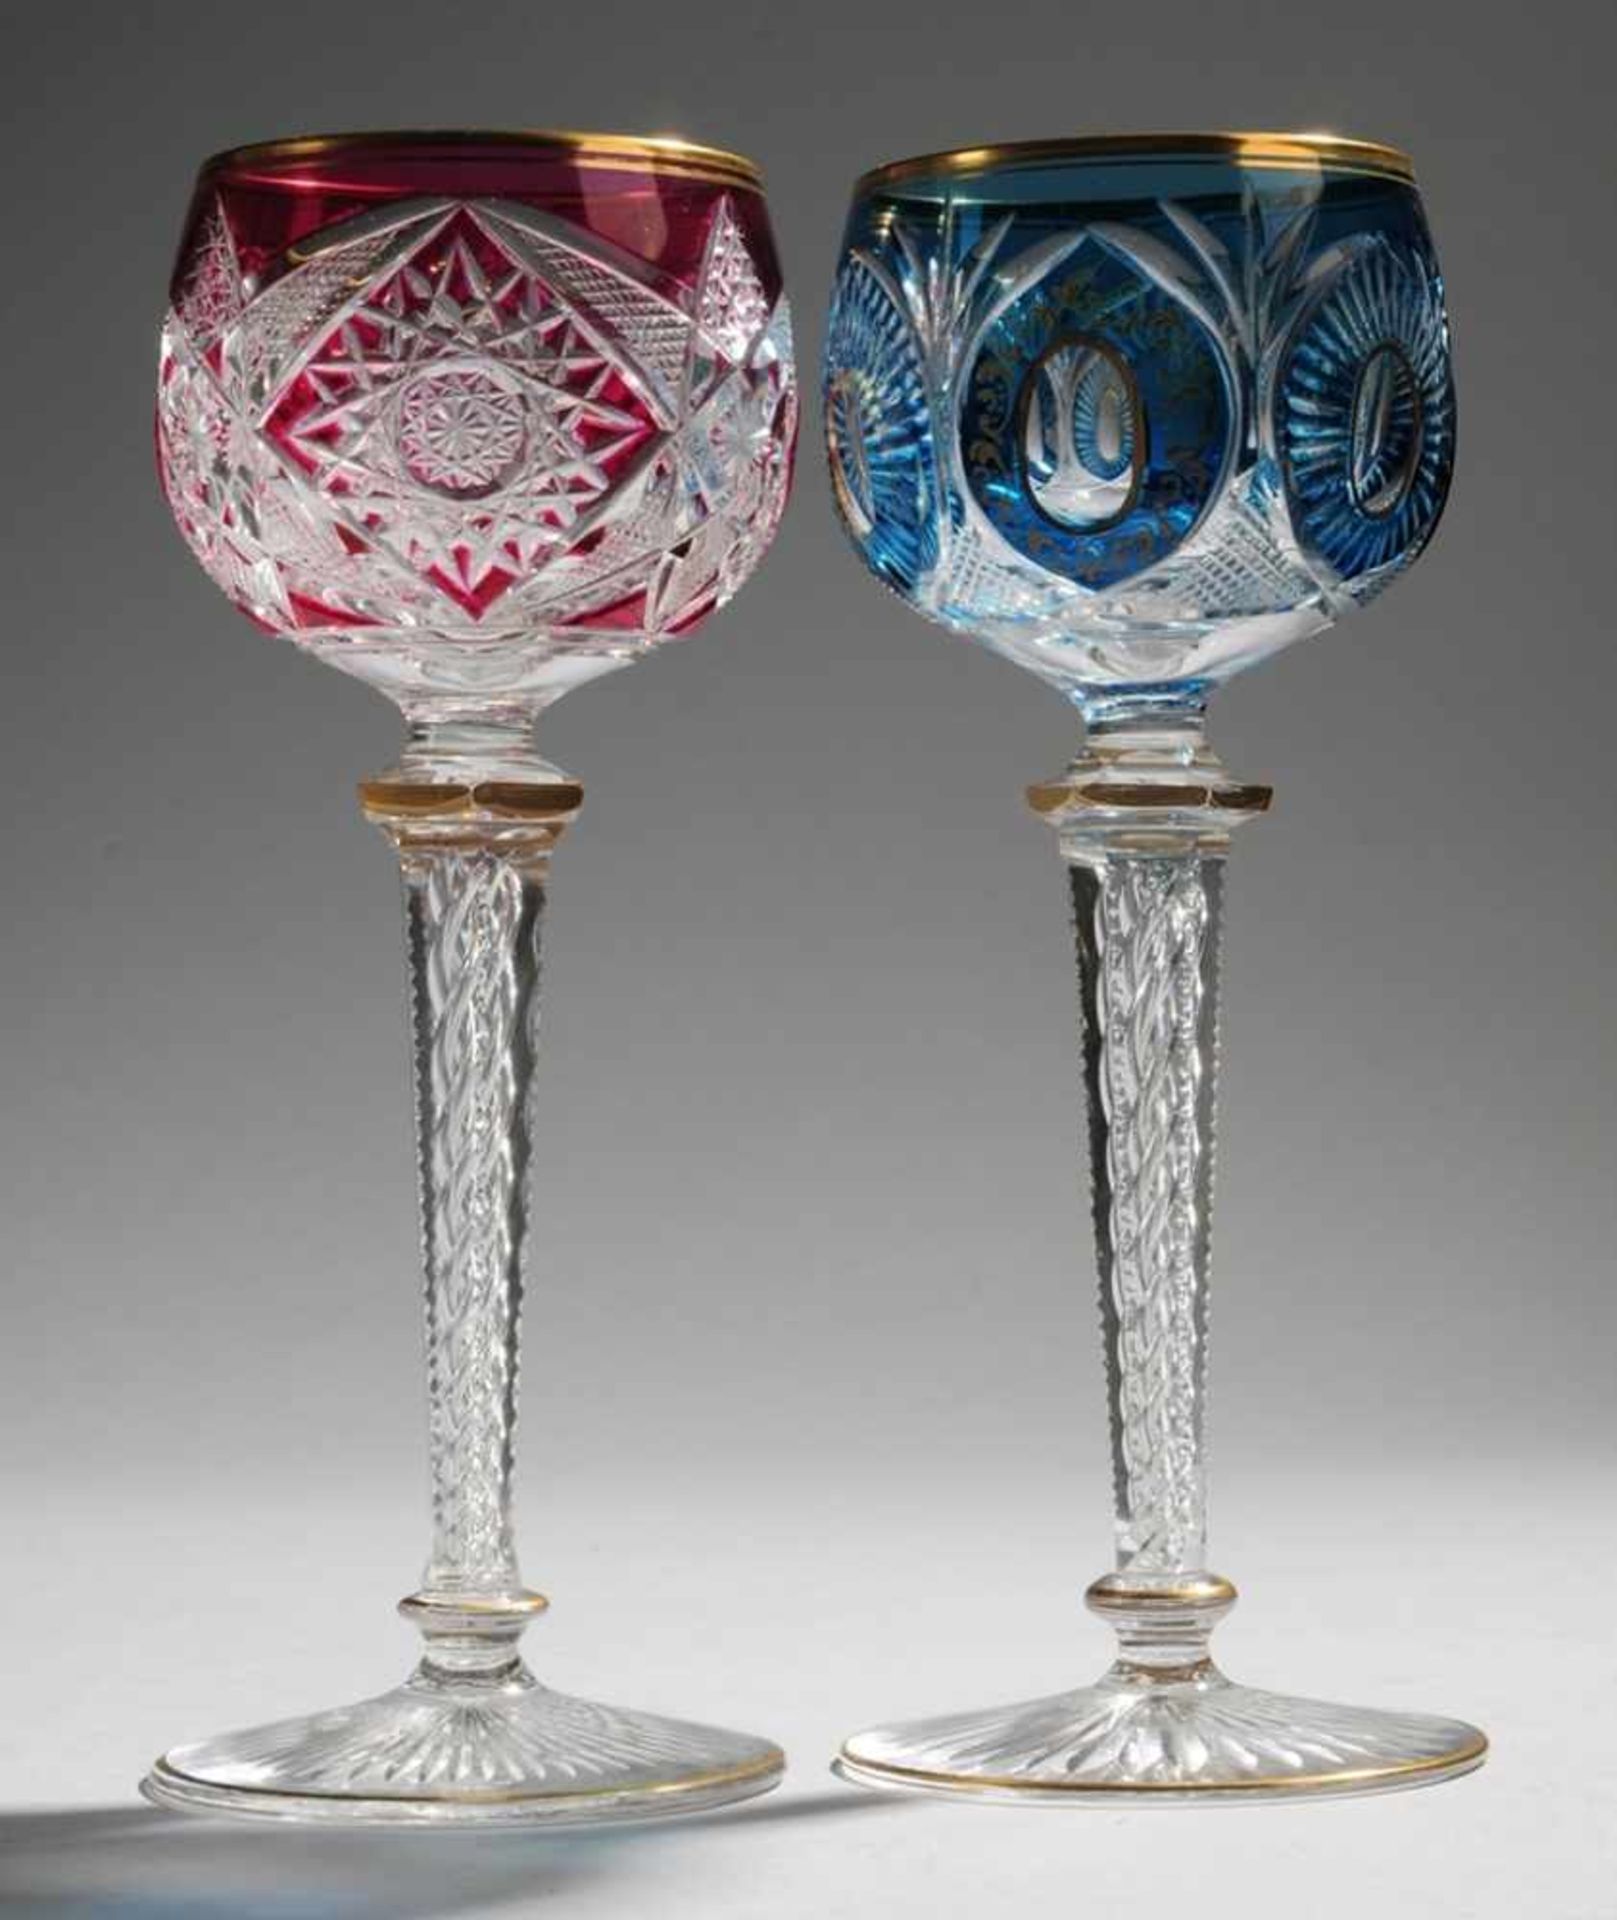 Paar RömerFarbloses Kristallglas, part. rot bzw. blau überfangen. Formgeblasen u. geschliffen.